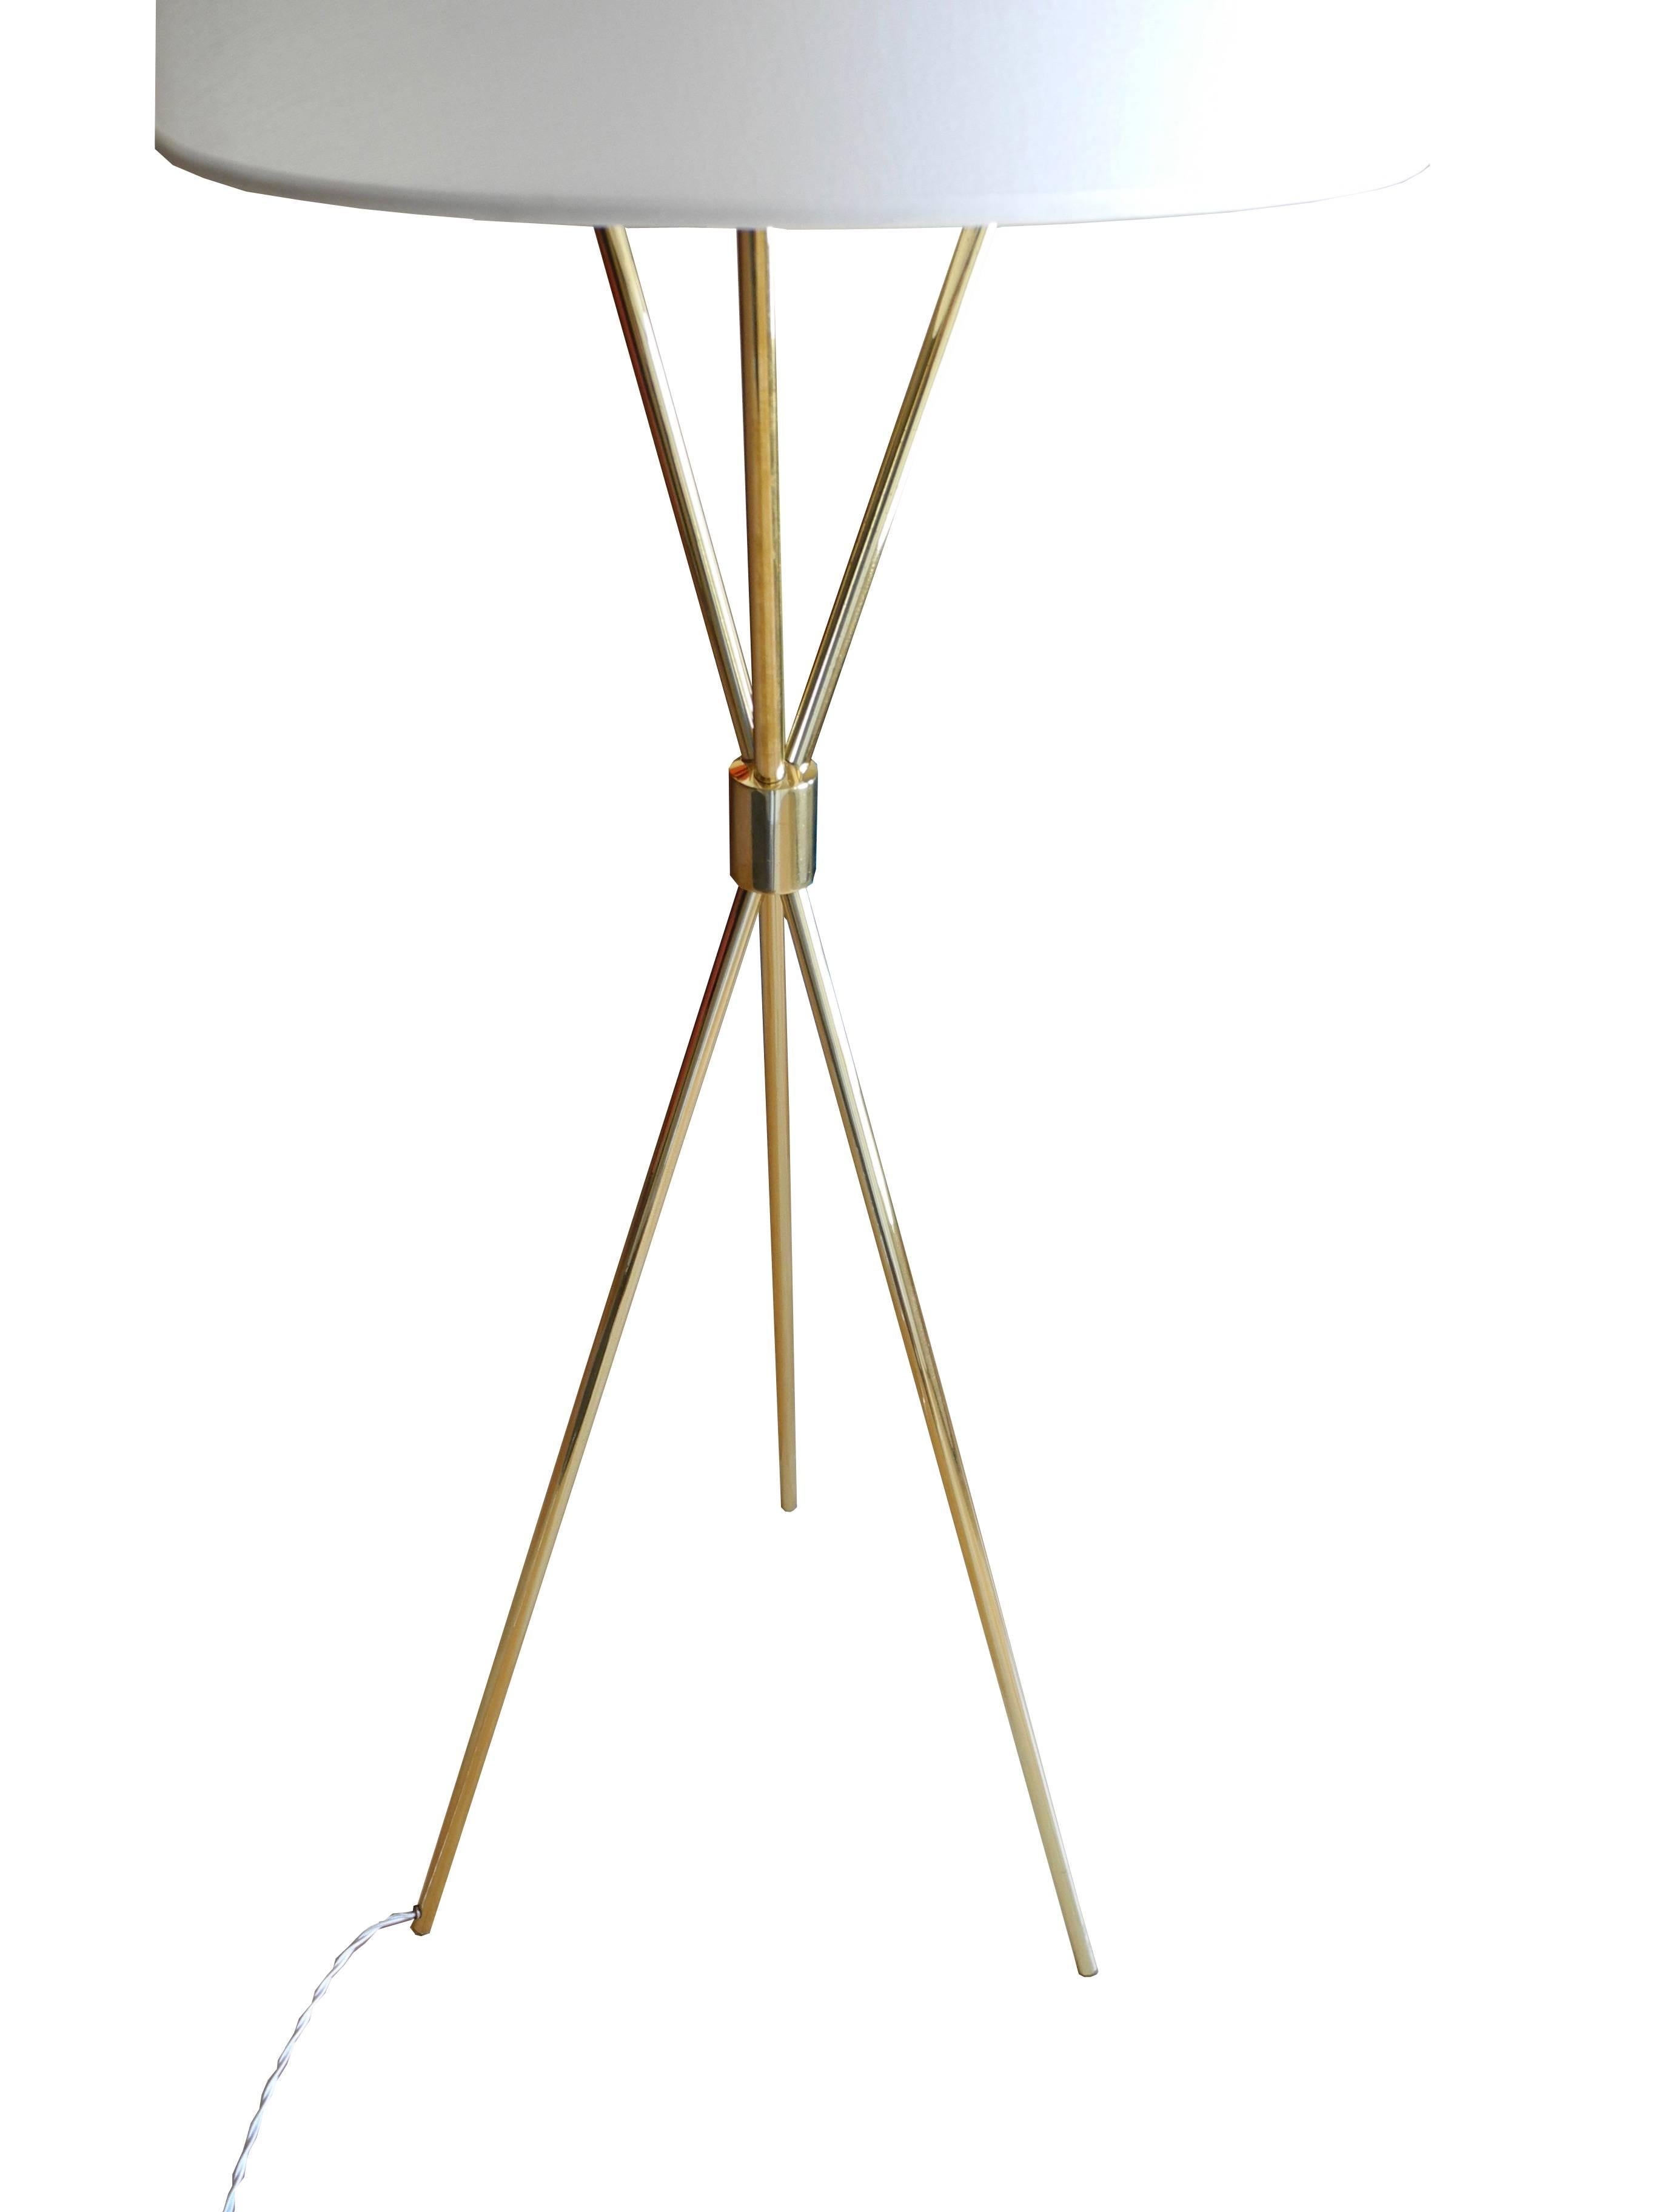 American Mid-Century Modern Tripod Brass Floor Lamp by T.H. Robsjohn-Gibbings for Hansen